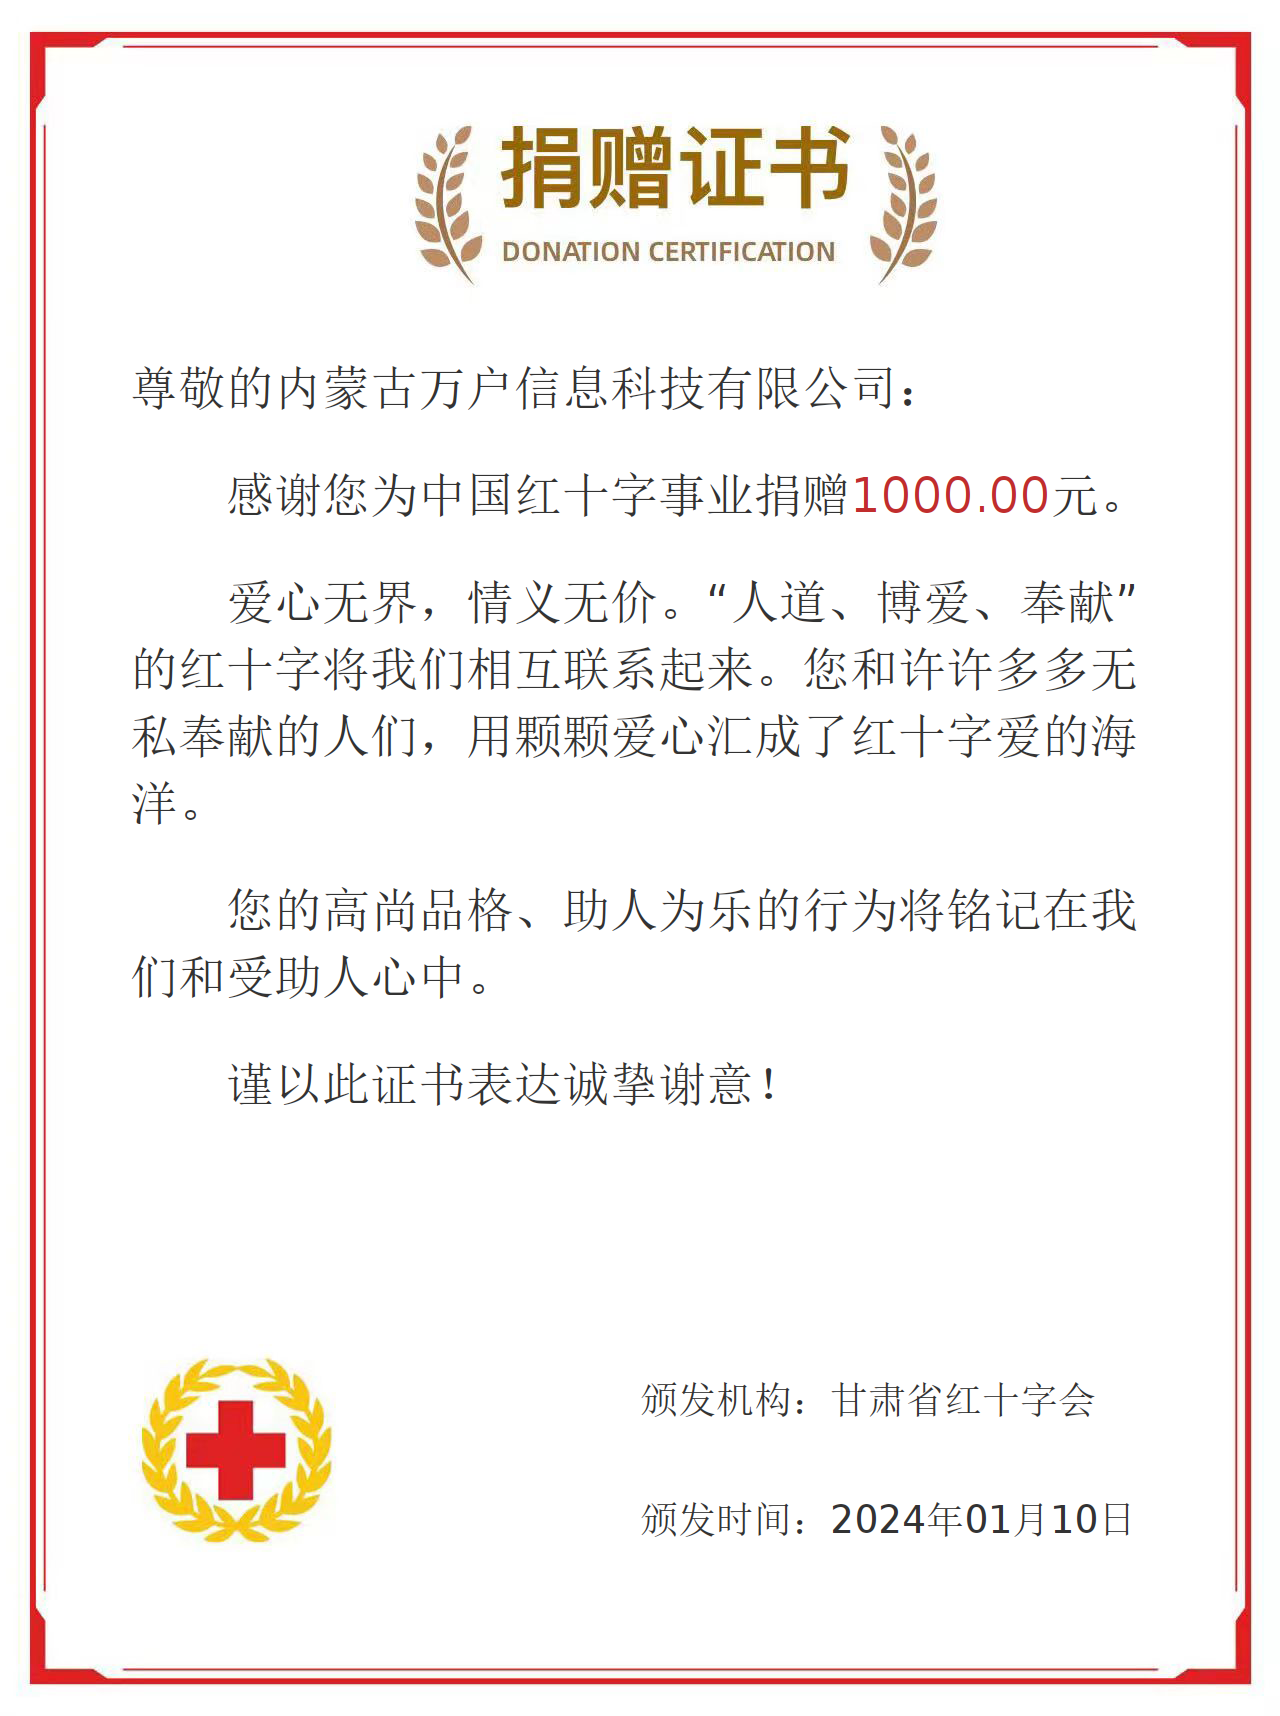 内蒙古万户信息科技有限公司为甘肃省红十字会捐款